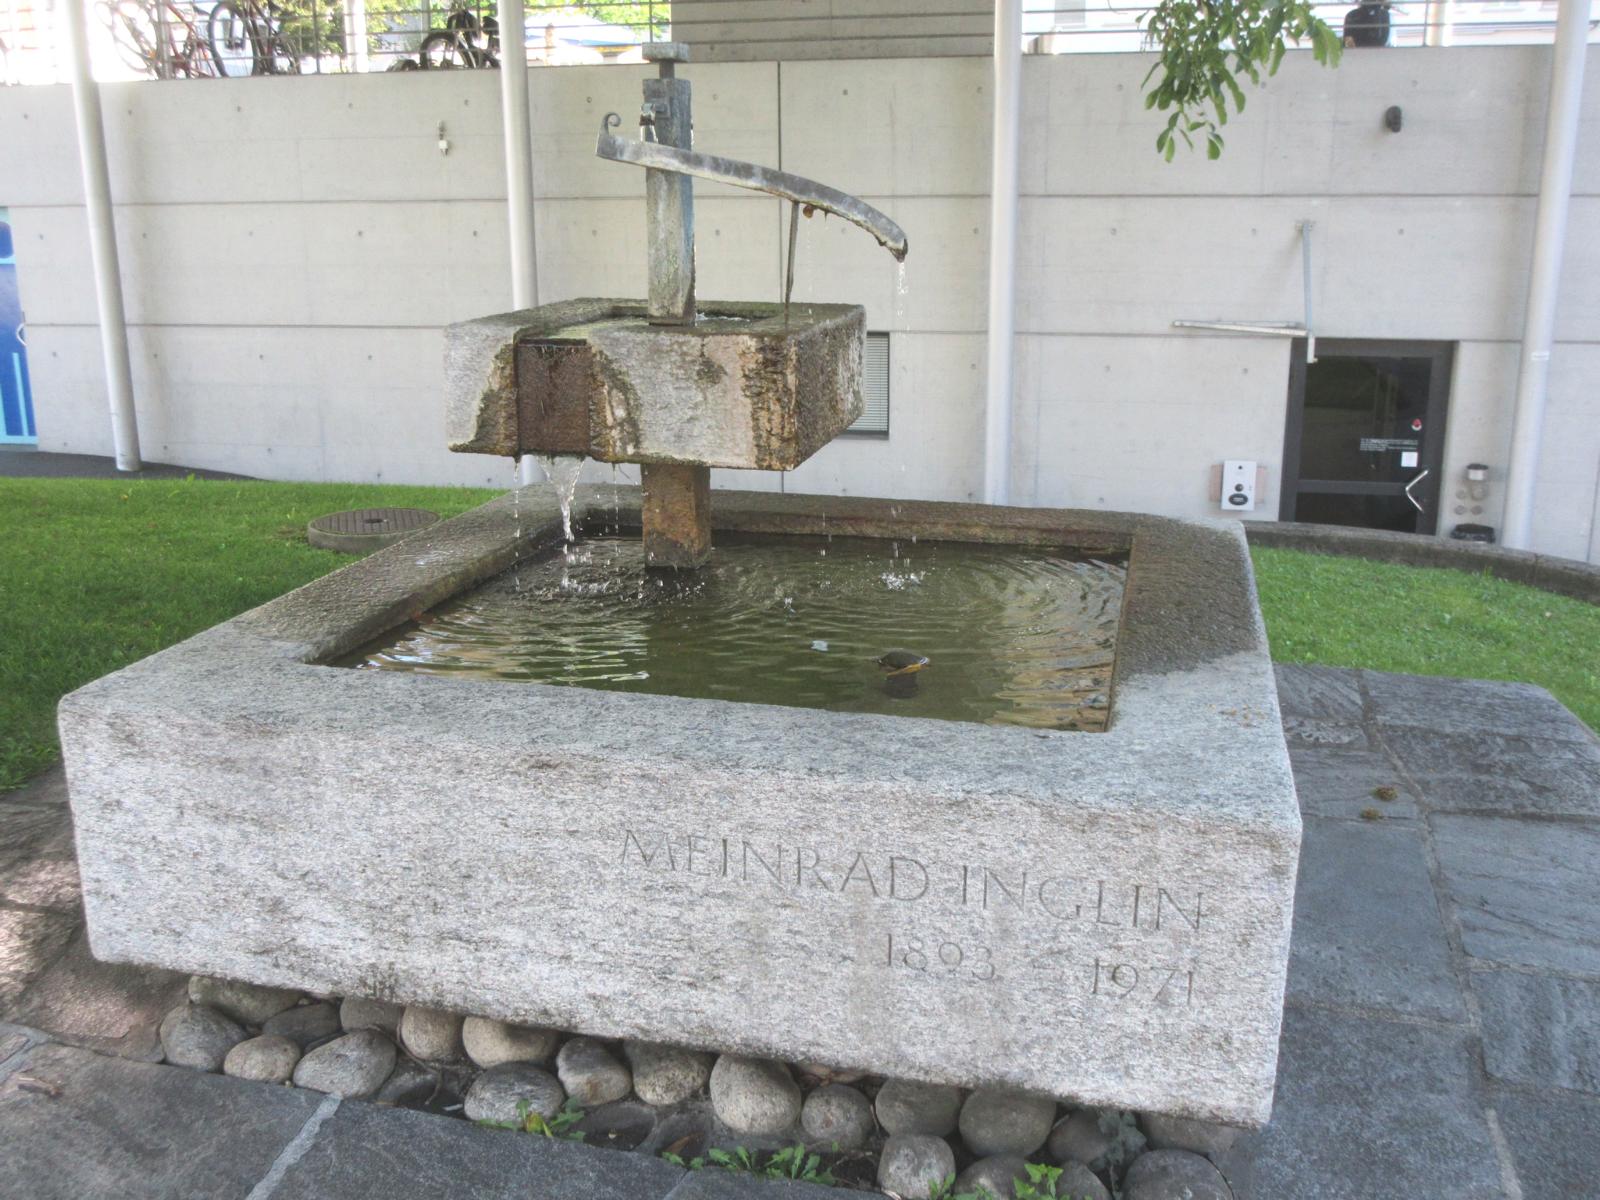 Meinrad-Inglin-Brunnen *** 1968 *** Granitgneis *** Bronze (Maria Luisa Wiget M.L.W. 1968) *** Meinrad Inglin, Schriftsteller, 1893-1971; der Brunnen wurde zum 75. Geburtstag Inglins errichtet.